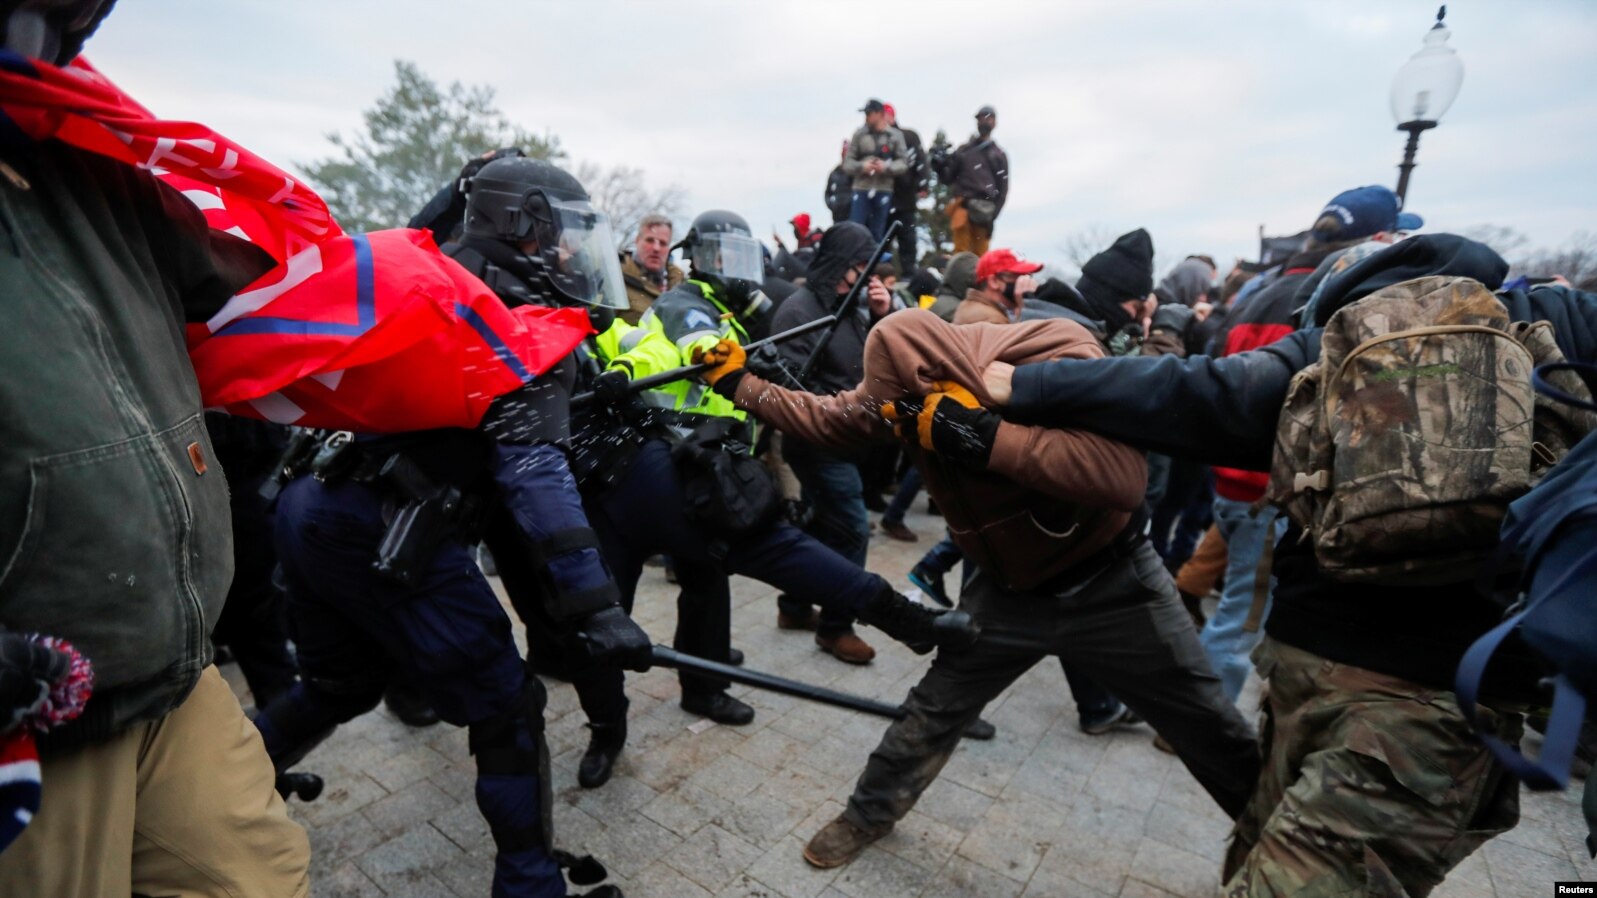 Сблъсъците между протестиращи и полиция.